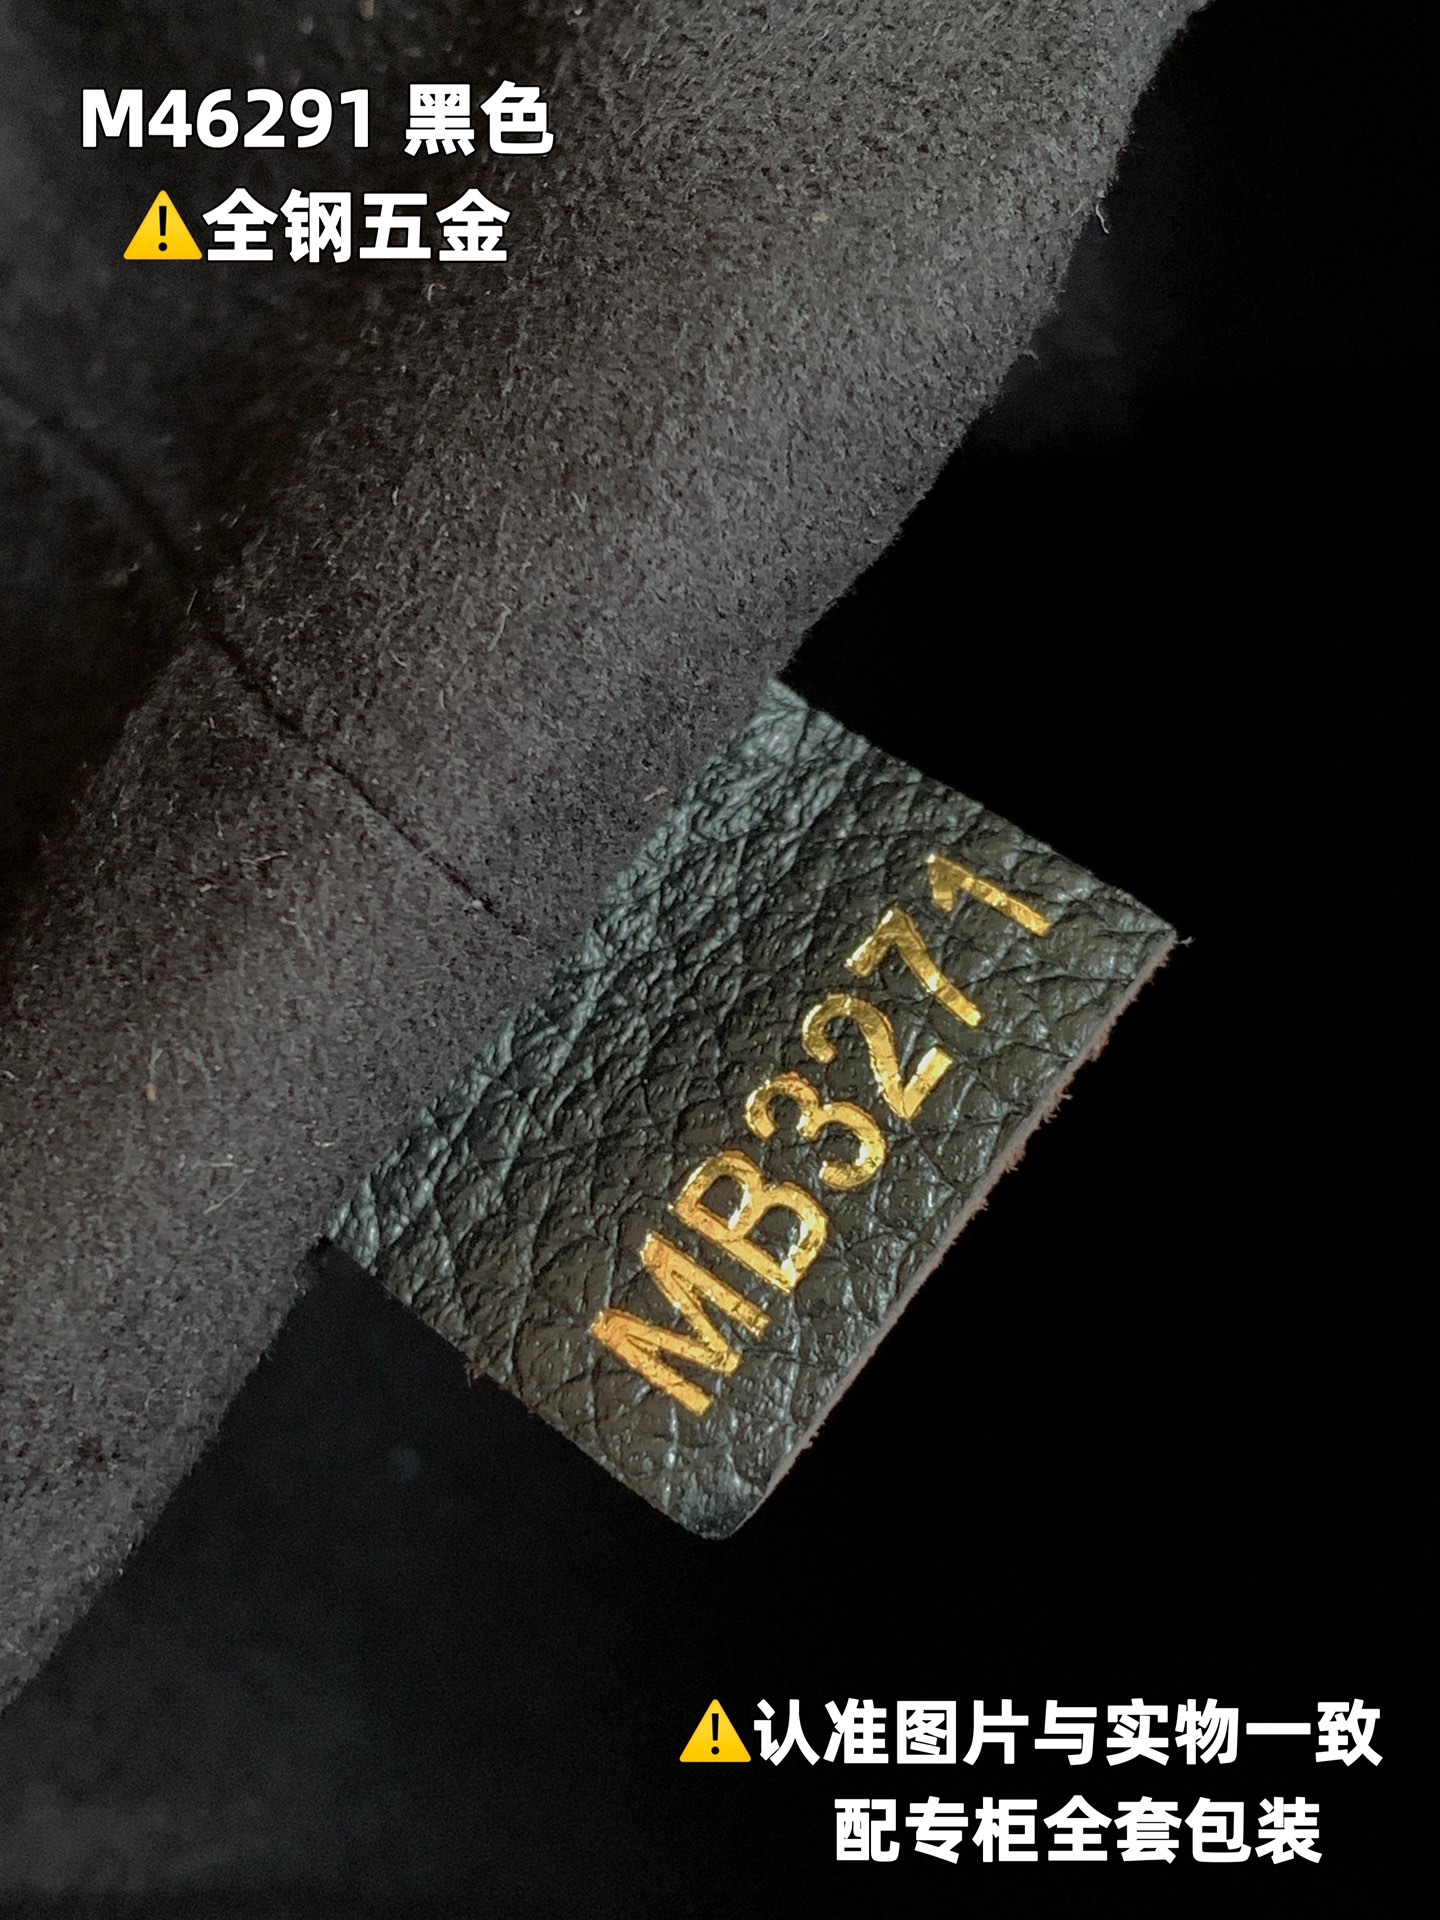 全钢MB厂M46291黑色印花皮料是意大利A级皮料是在于品质五金面料手工油边A级出品图片跟产品一致丶配全